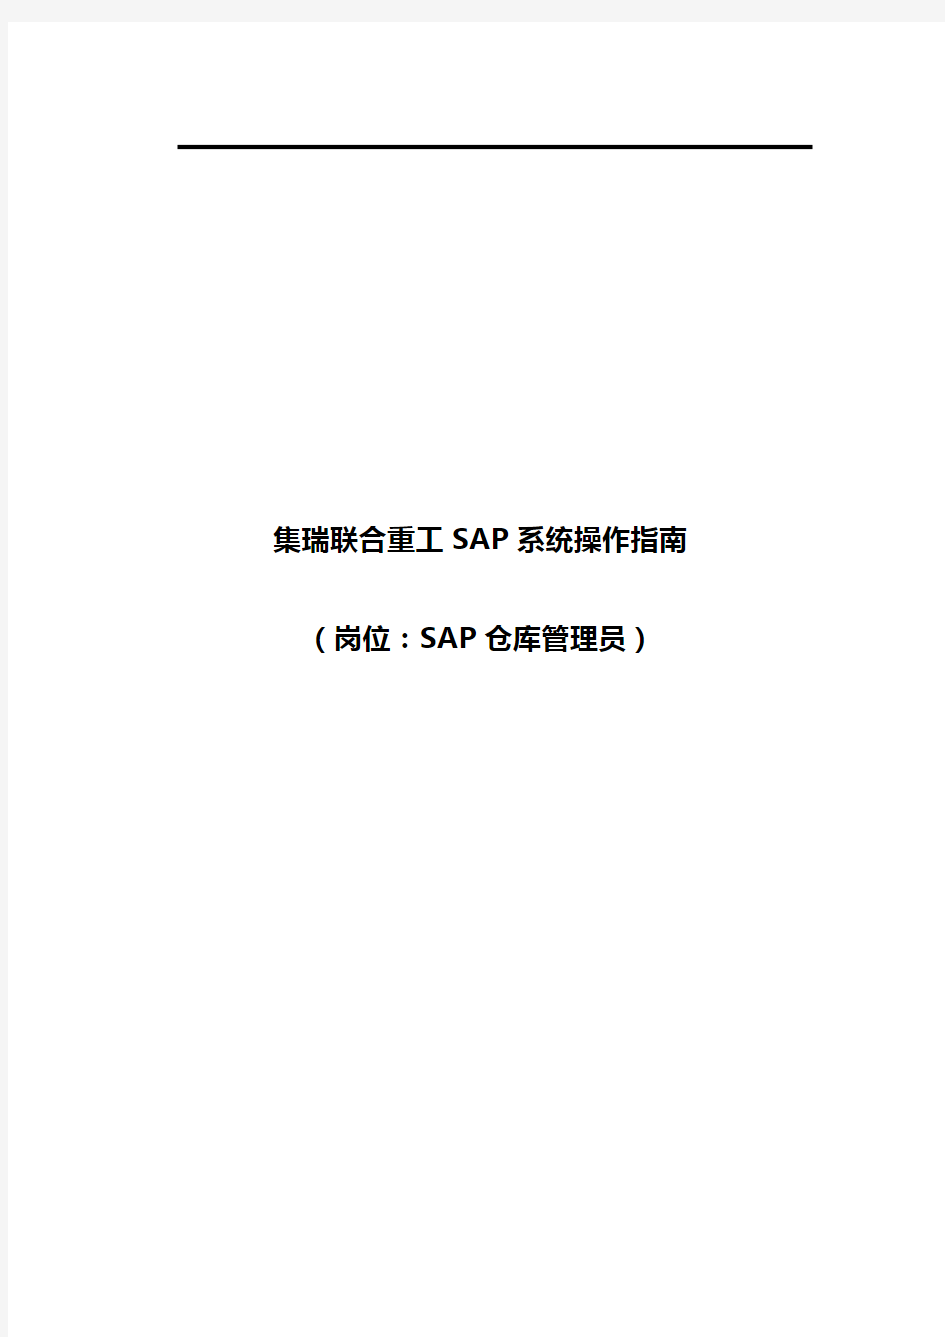 (ERPMRP管理)ERP系统操作指南(SAP仓库管理员岗位)